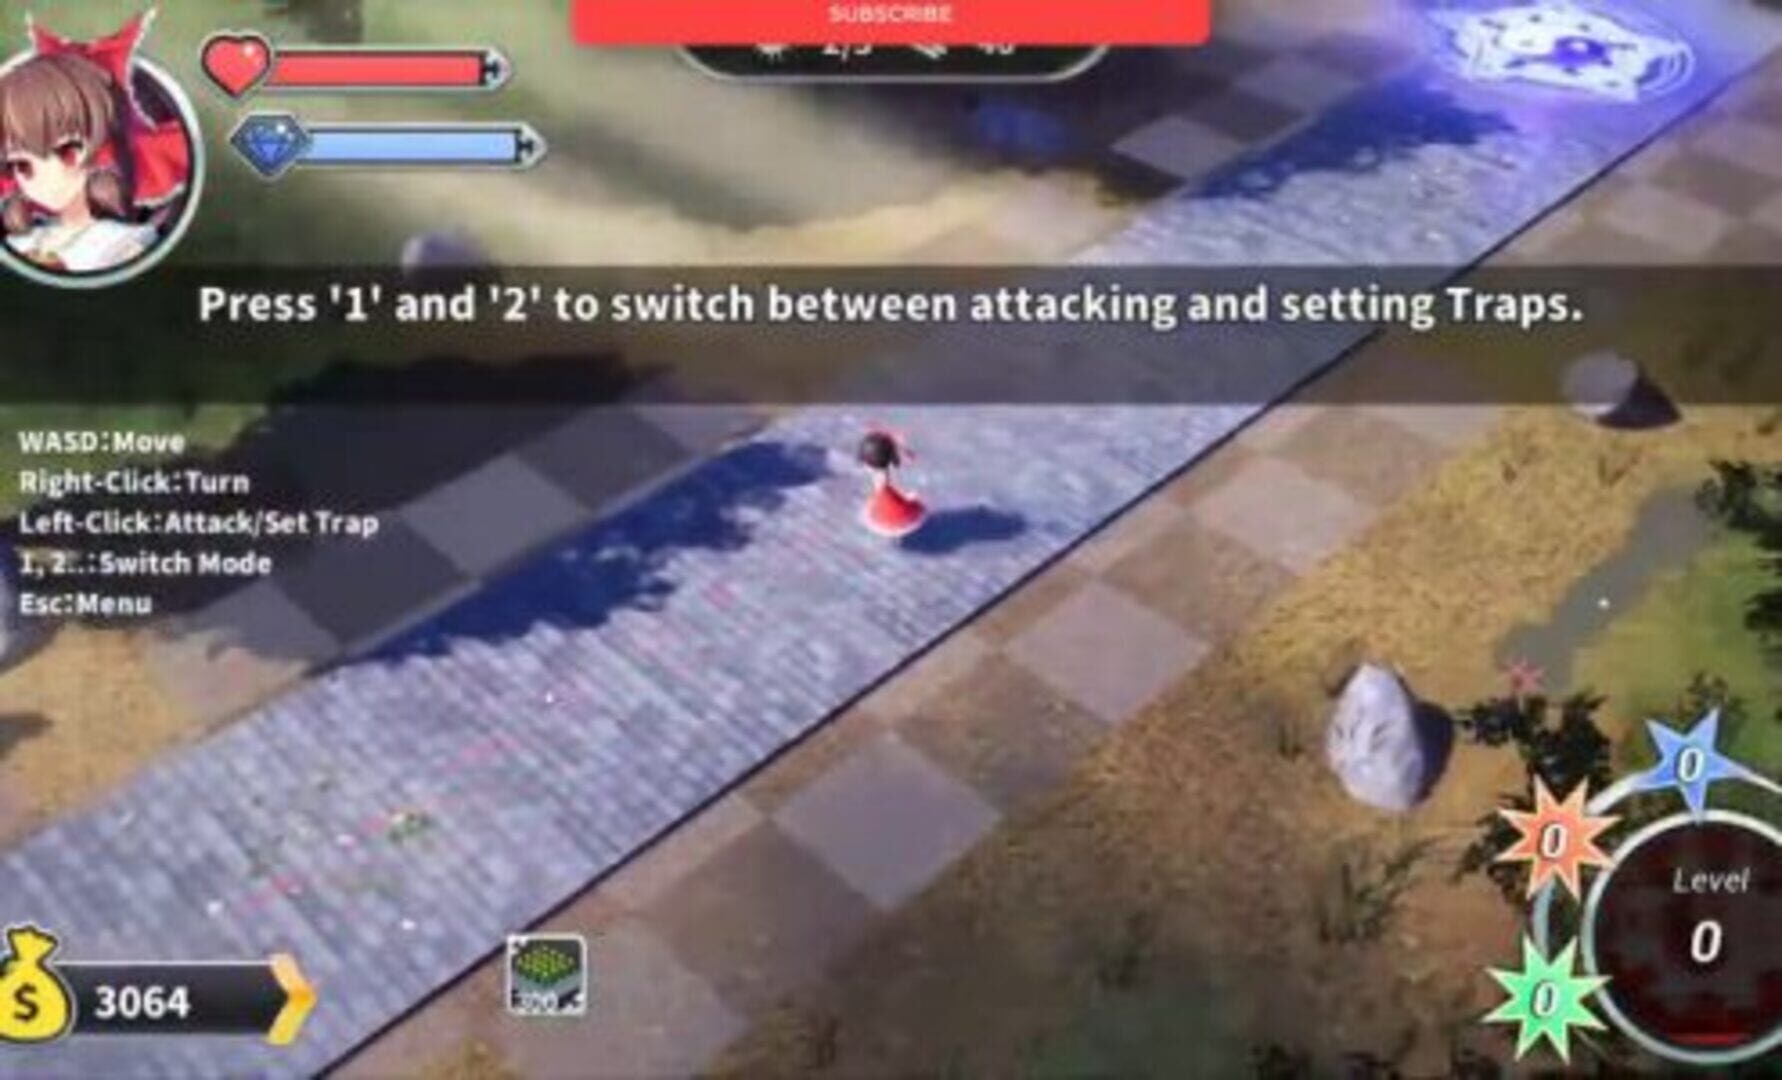 Gensokyo Defenders Plus screenshot